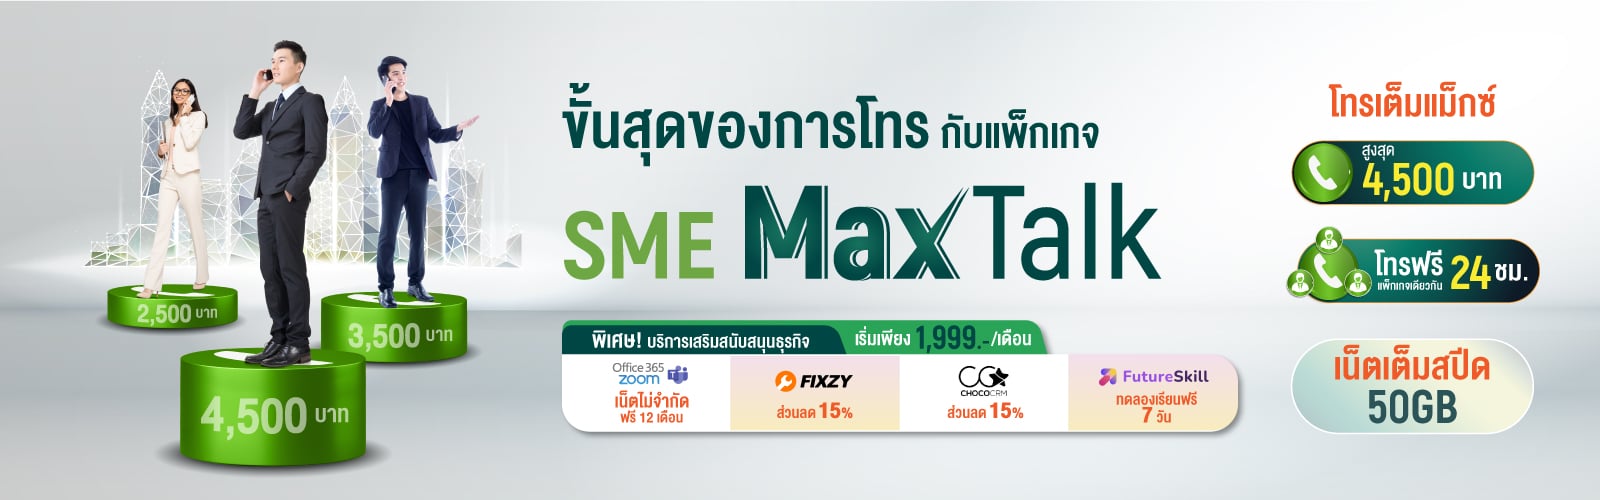 SME Max Talk